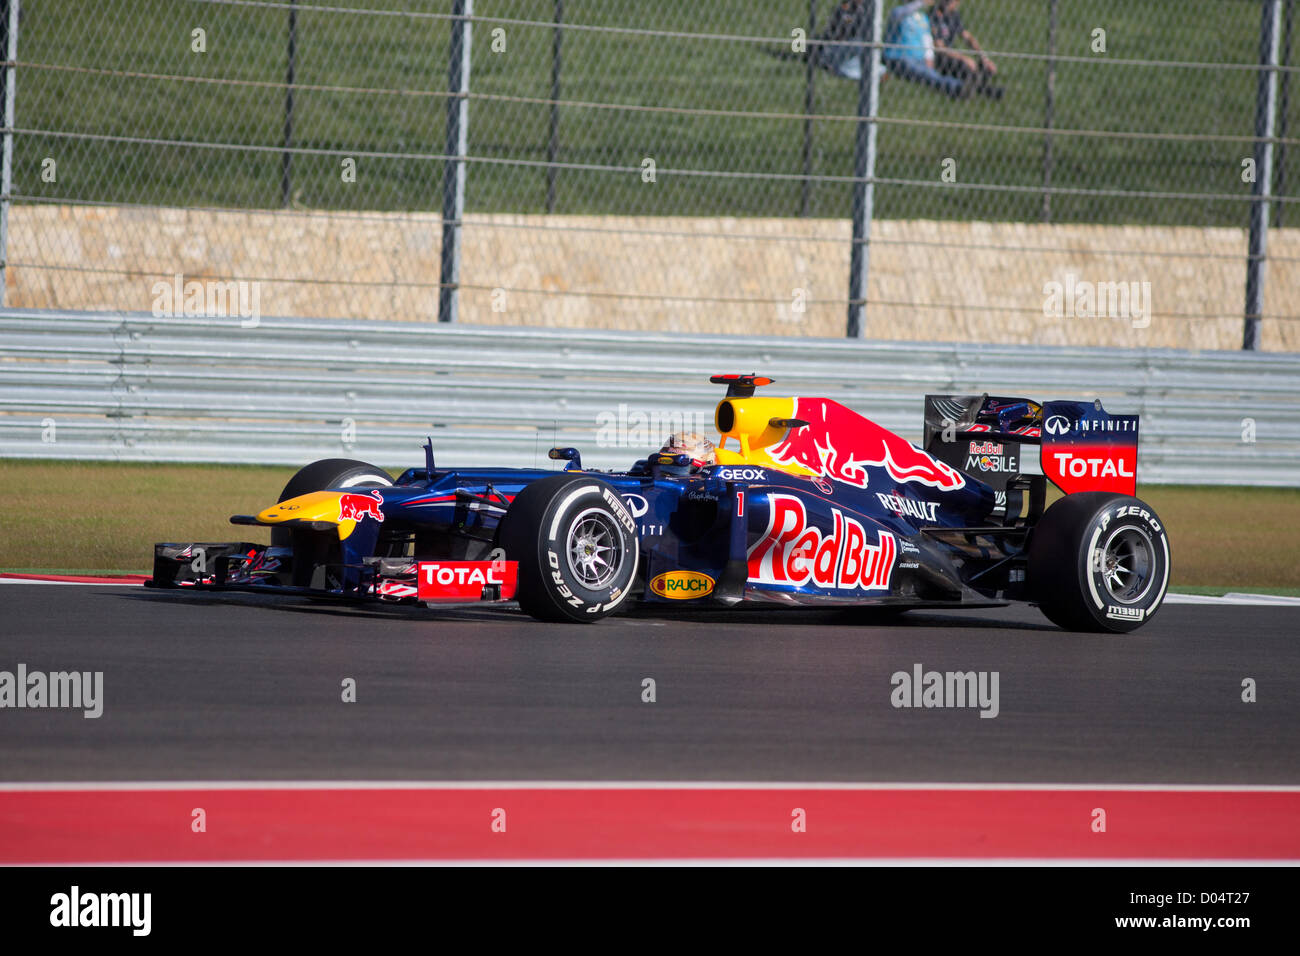 Têtes de Sebastian Vettel à son tour 15 au cours de la pratique pour la F1 United States Grand Prix au circuit of the Americas voie Banque D'Images